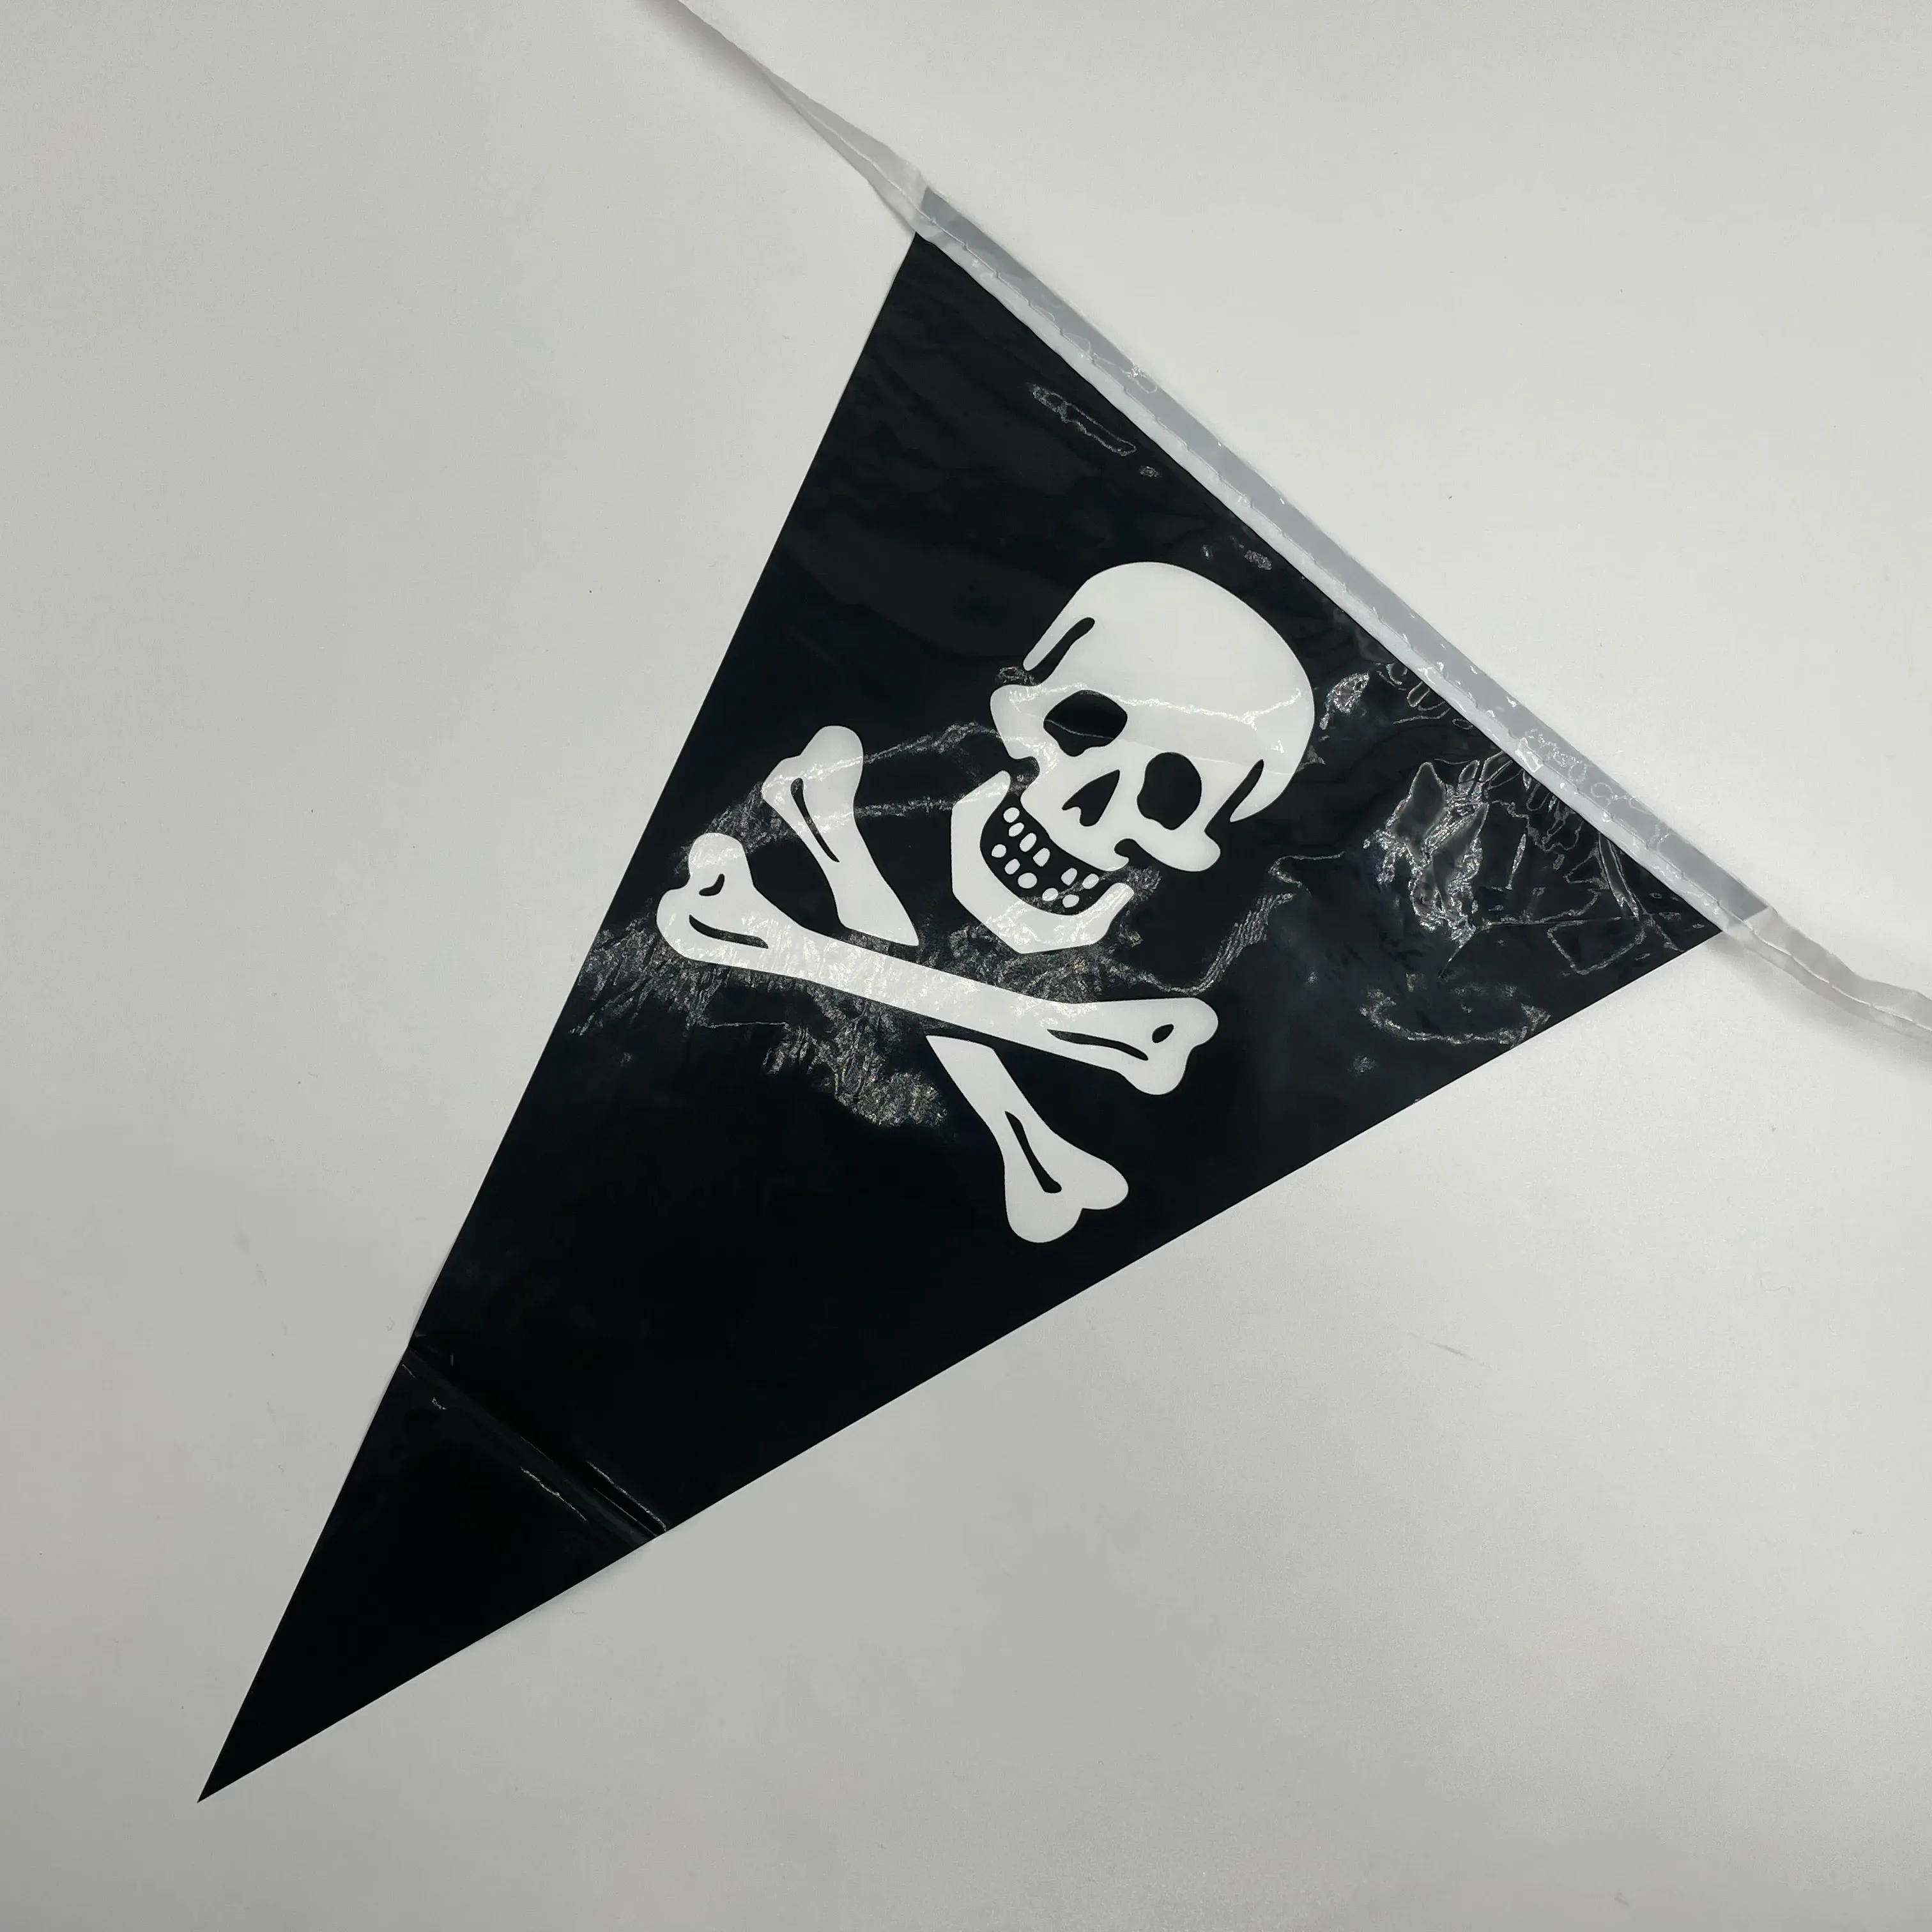 ऑन-द-शेल्फ थोक हैलोवीन थीम वाले खोपड़ी-स्ट्रिंग ध्वज को अनुकूलित कर सकते हैं